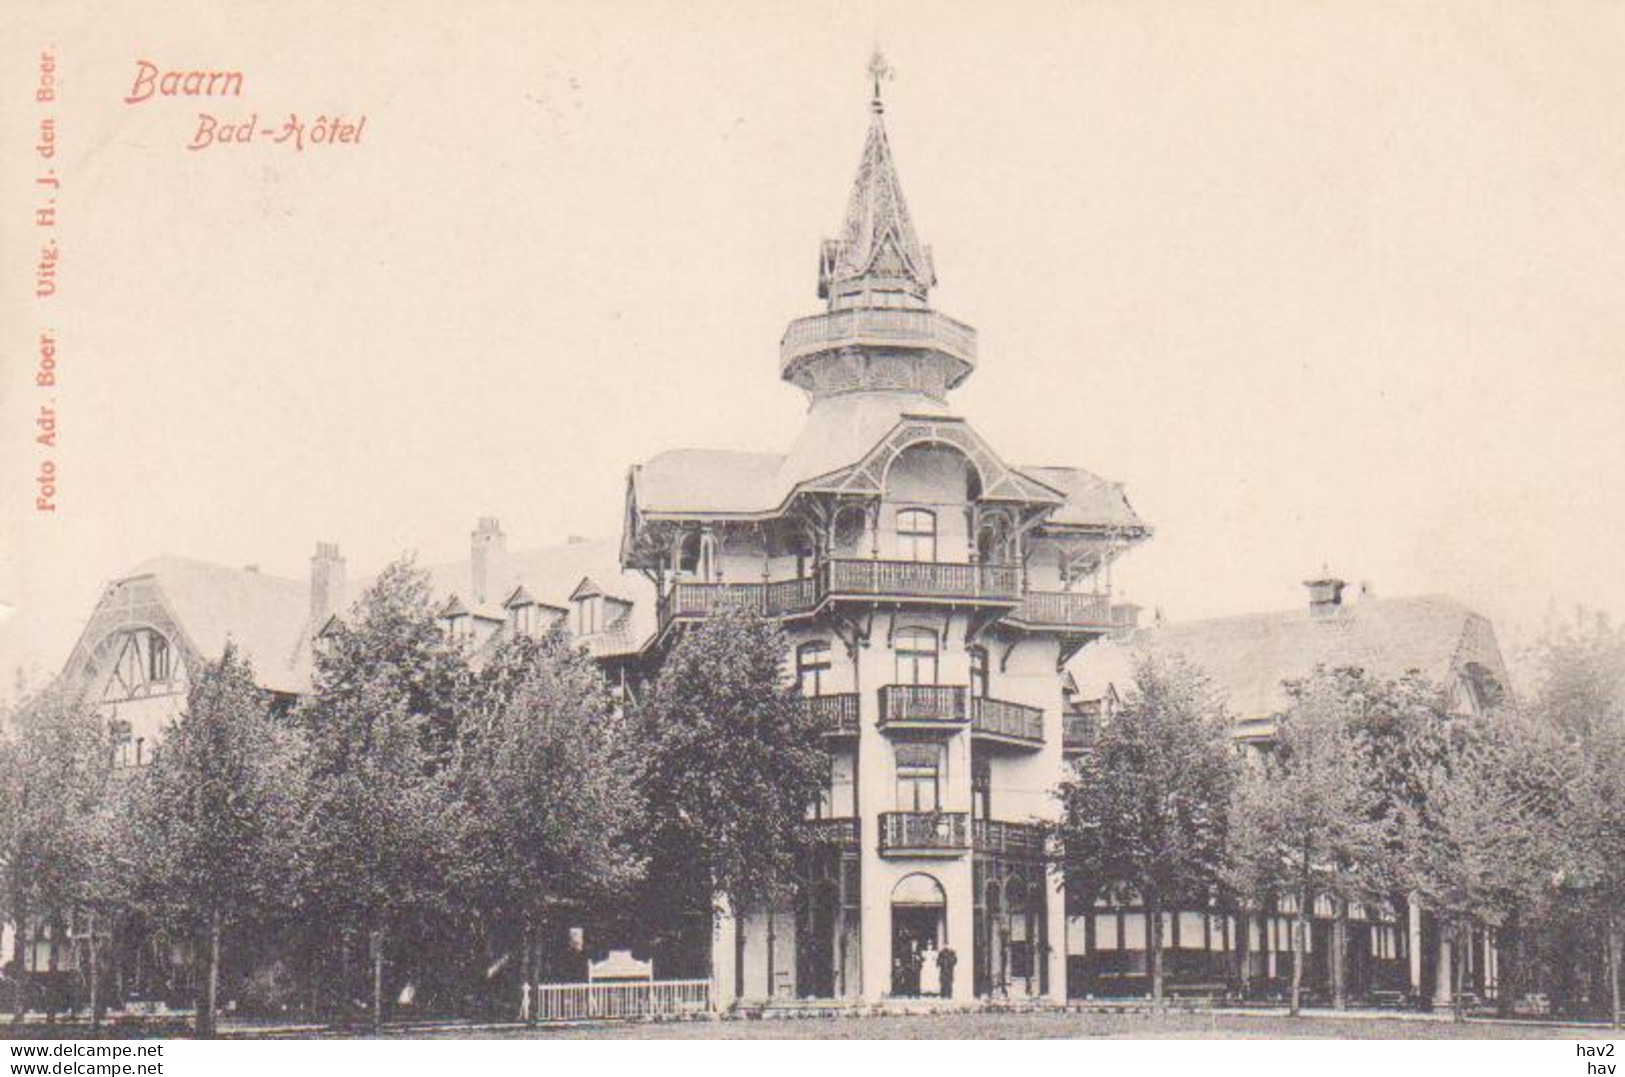 Baarn Bad Hotel Ca. 1905 RY17499 - Baarn